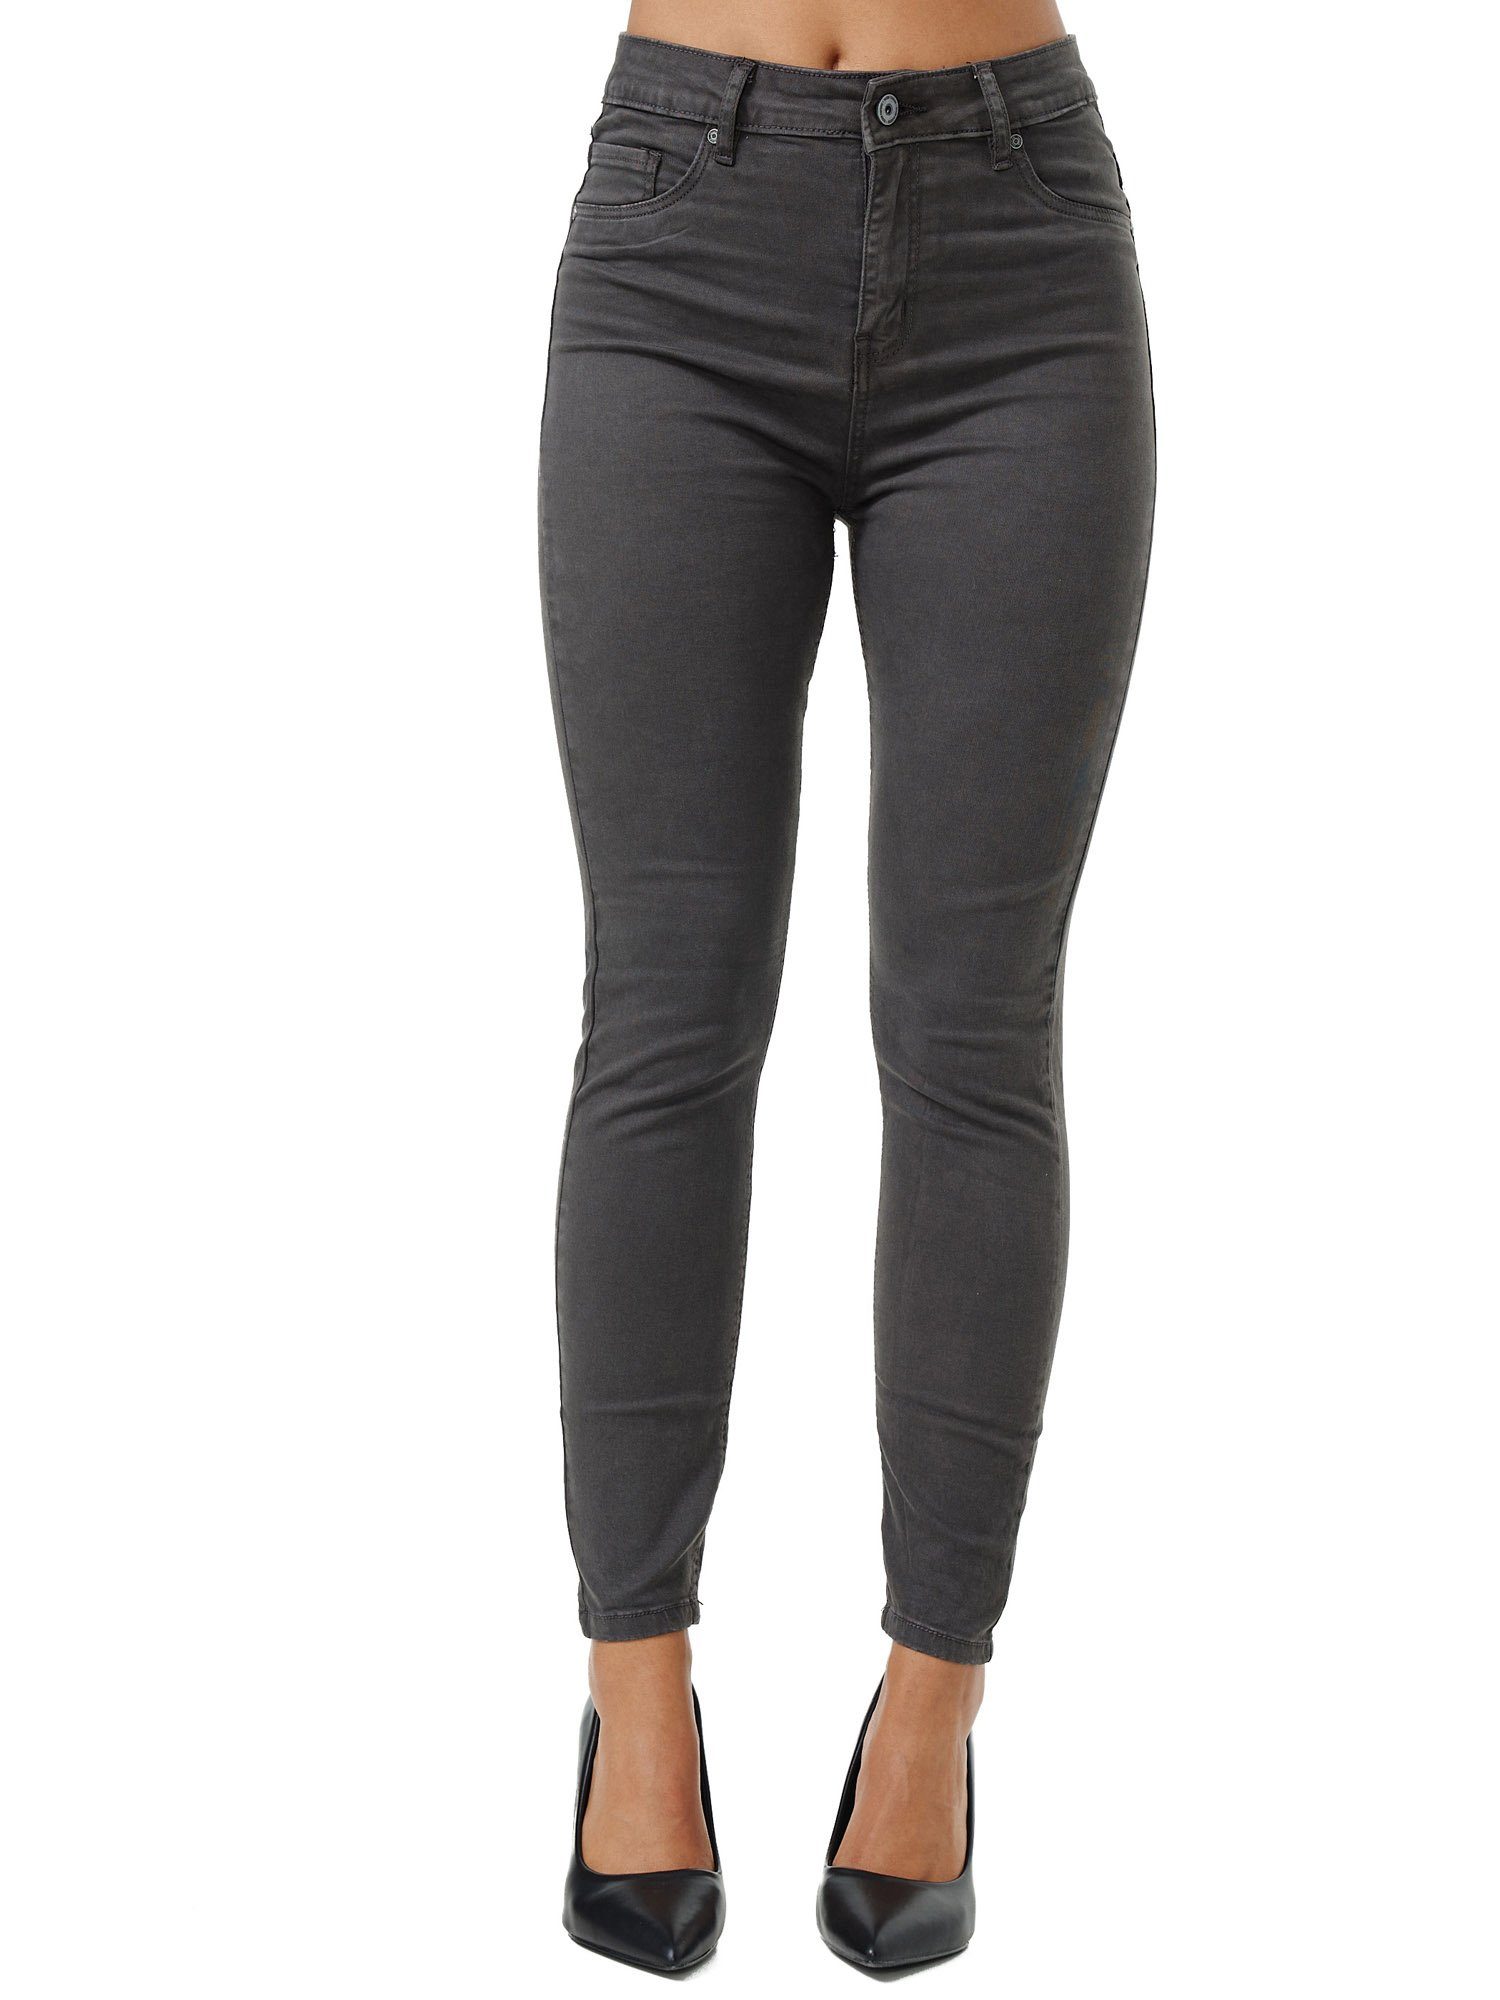 Tazzio Skinny-fit-Jeans F103 Damen High Rise Jeanshose anthrazit